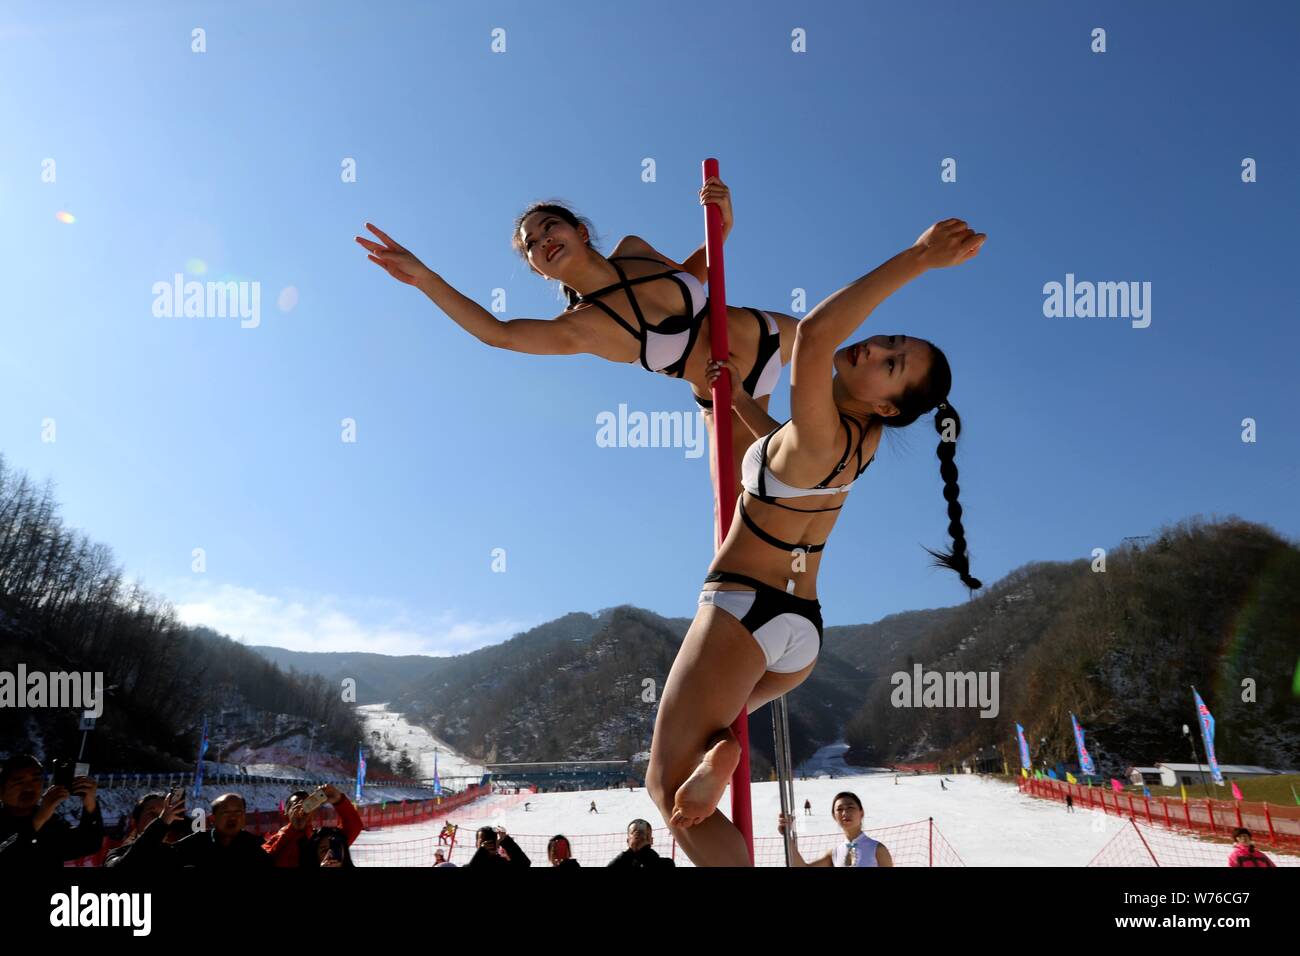 Chinesische Mädchen tragen Bikinis durchführen Pole Dance vor Kälte an einem Ski Park in Luanchuan County, Luoyang City, Central China Provinz Henan, 3. Dezember Stockfoto